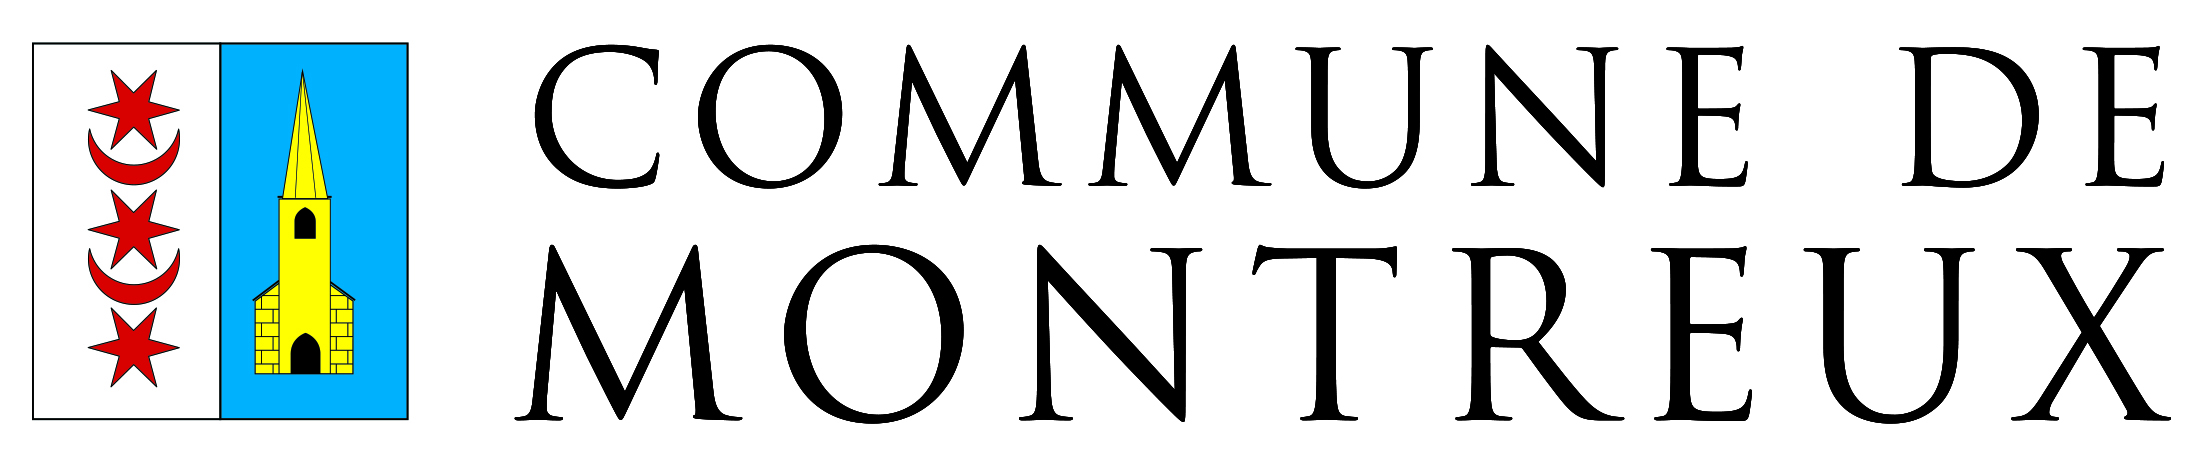 Logo Montreux CMYK